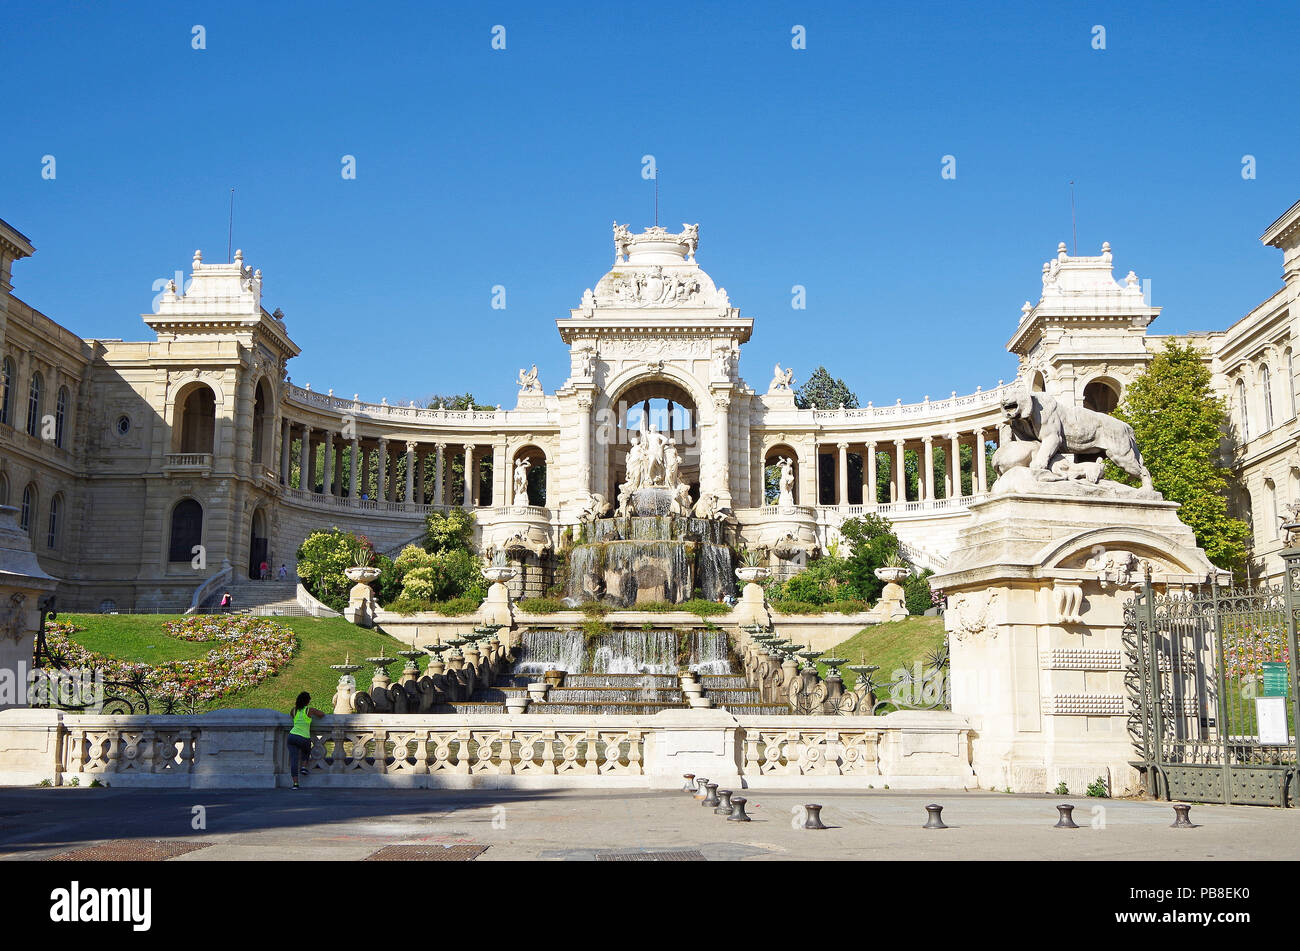 Prospetto Principale del favoloso palazzo Longchamp a Marsiglia, Francia, comprendente 2 musei, castello d'acqua, colonnati, fontane e sculture Foto Stock